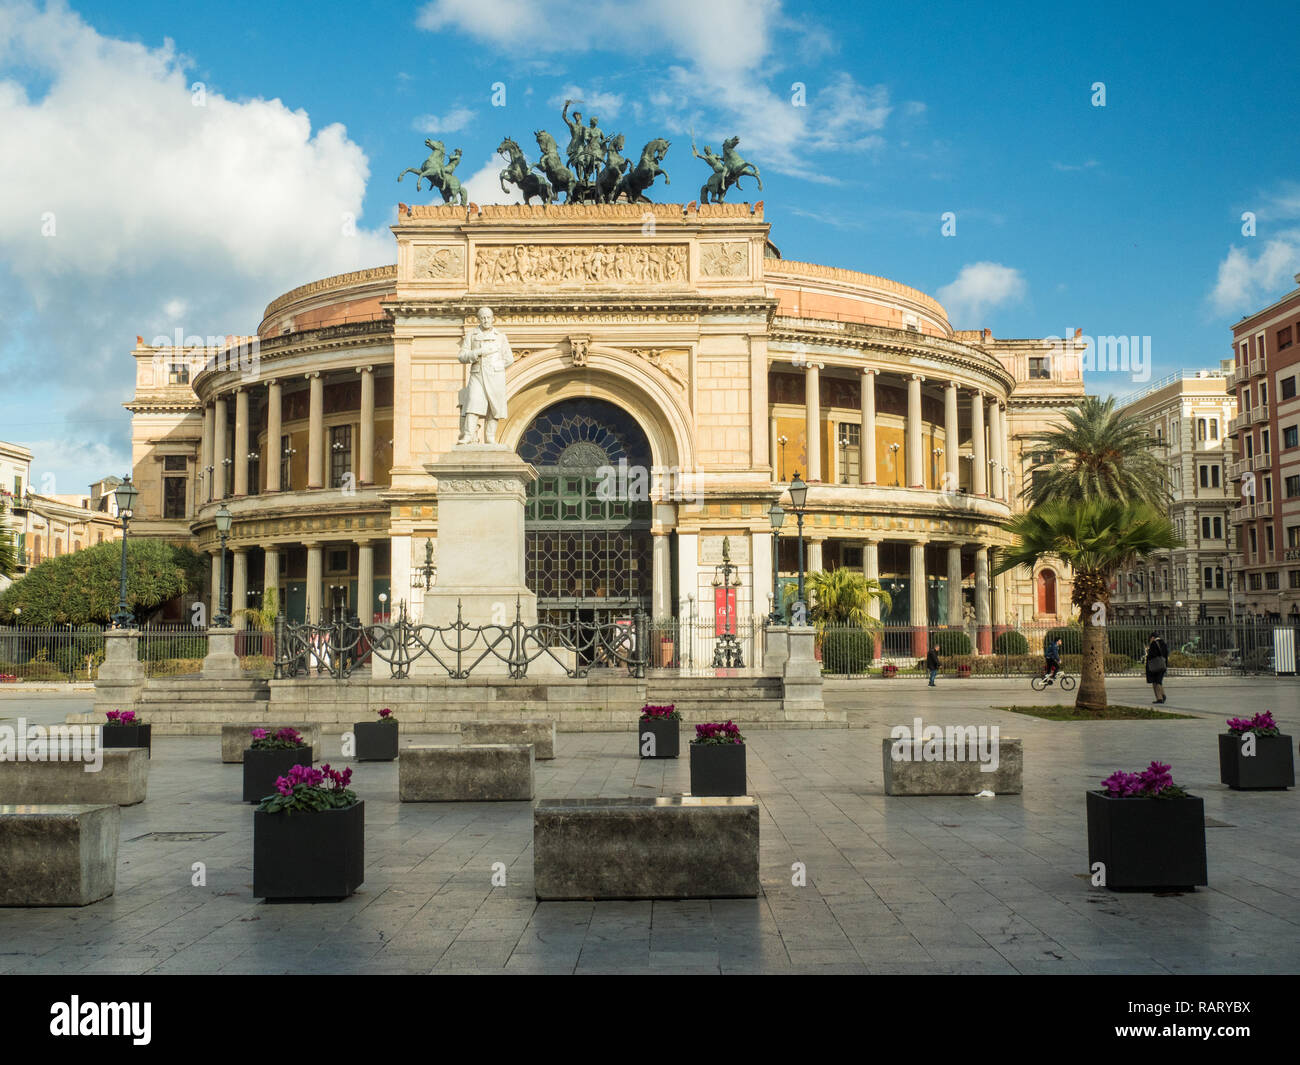 Politeama Theatre in Piazza Ruggero Settimo, city of Palermo, Sicily, Italy. Stock Photo